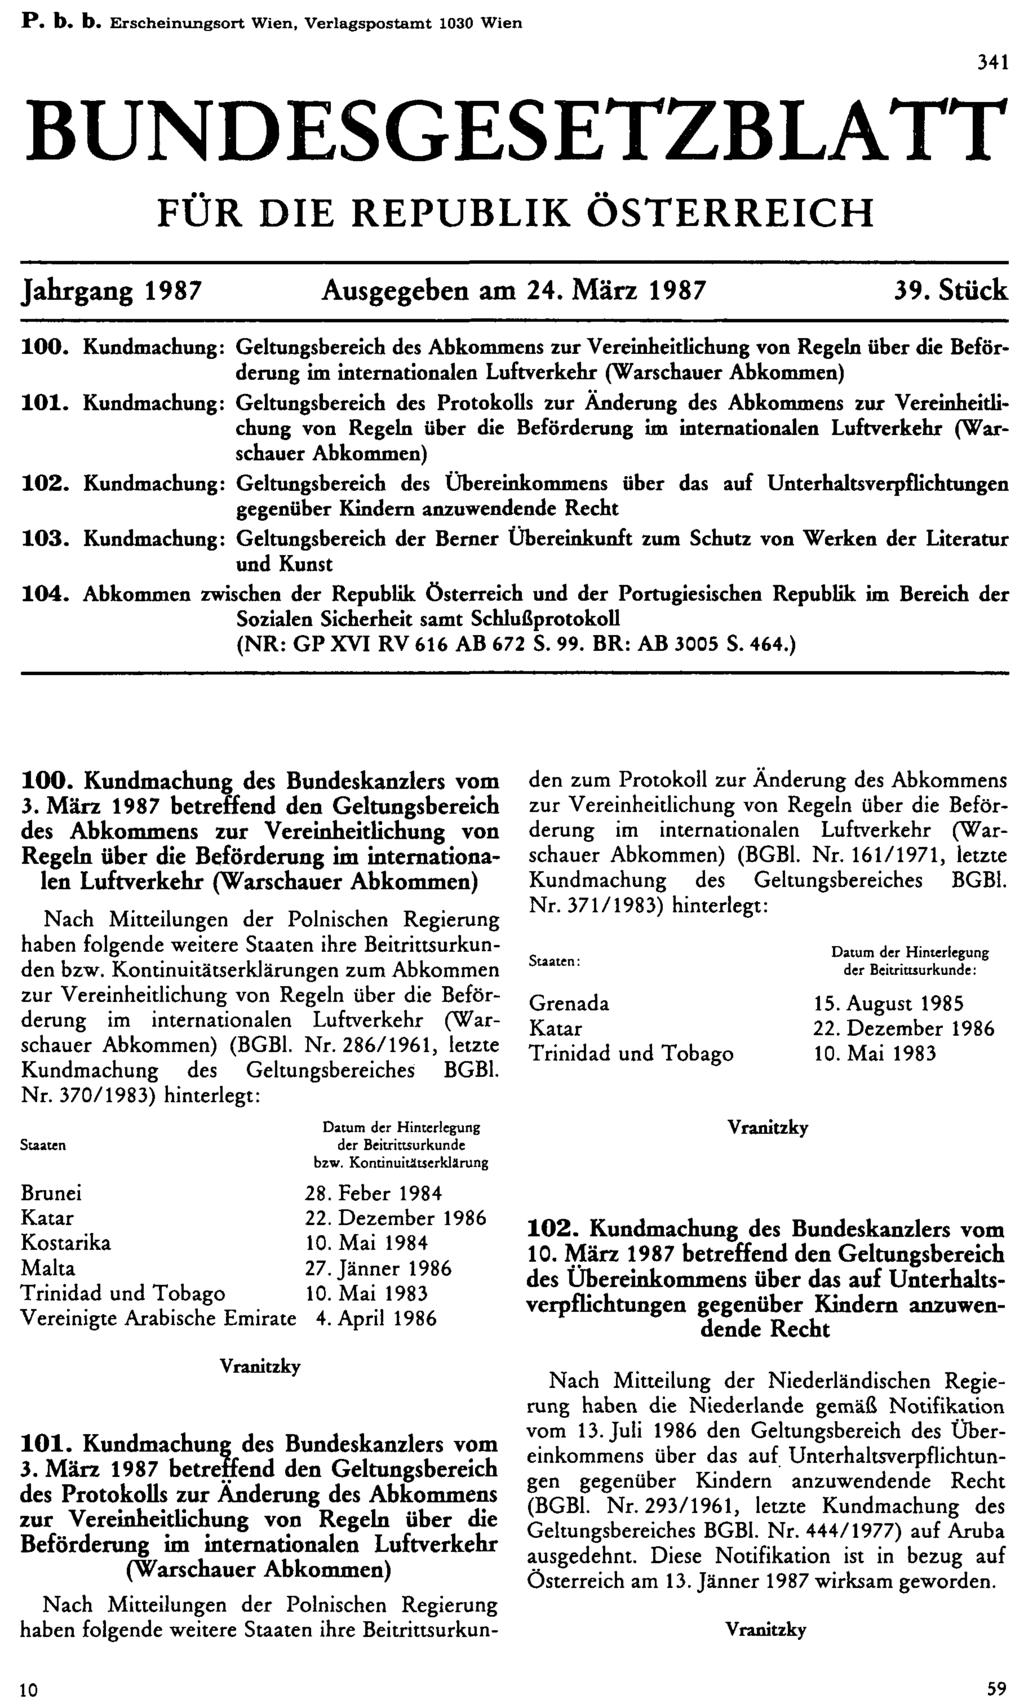 P. b. b. Erscheinungsort Wien, Verlagspostamt 1030 Wien BUNDESGESETZBLATT FÜR DIE REPUBLIK ÖSTERREICH Jahrgang 1987 Ausgegeben am 24. März 1987 39. Stück 100.